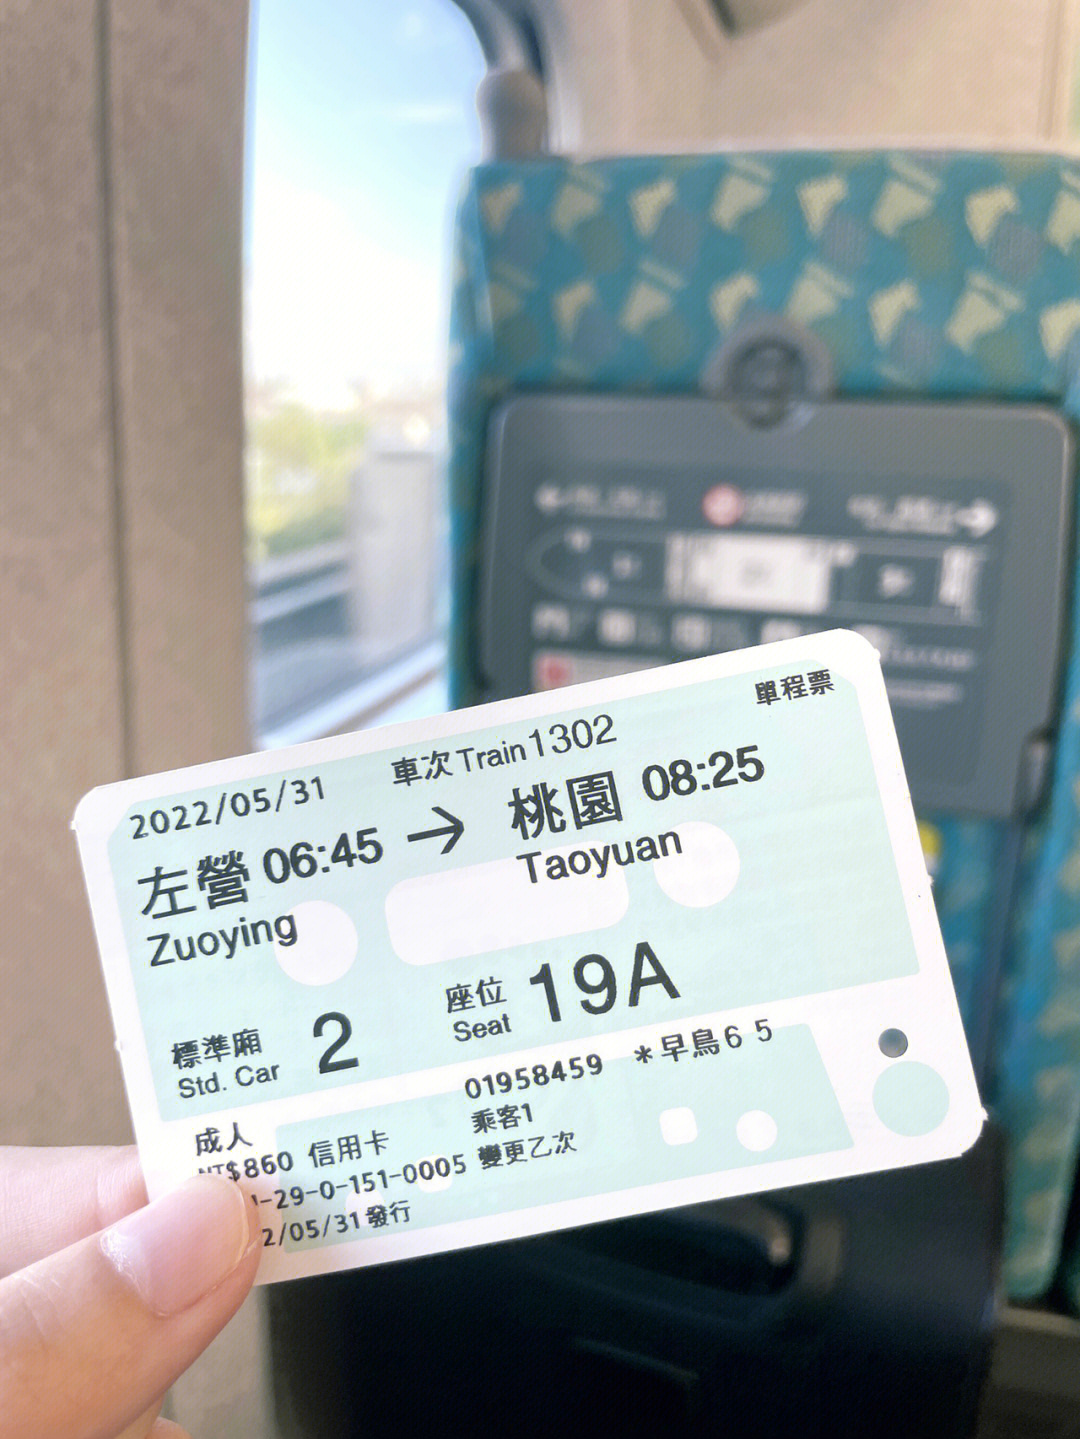 纪录一下我也有特别版的台湾高铁车票啦78